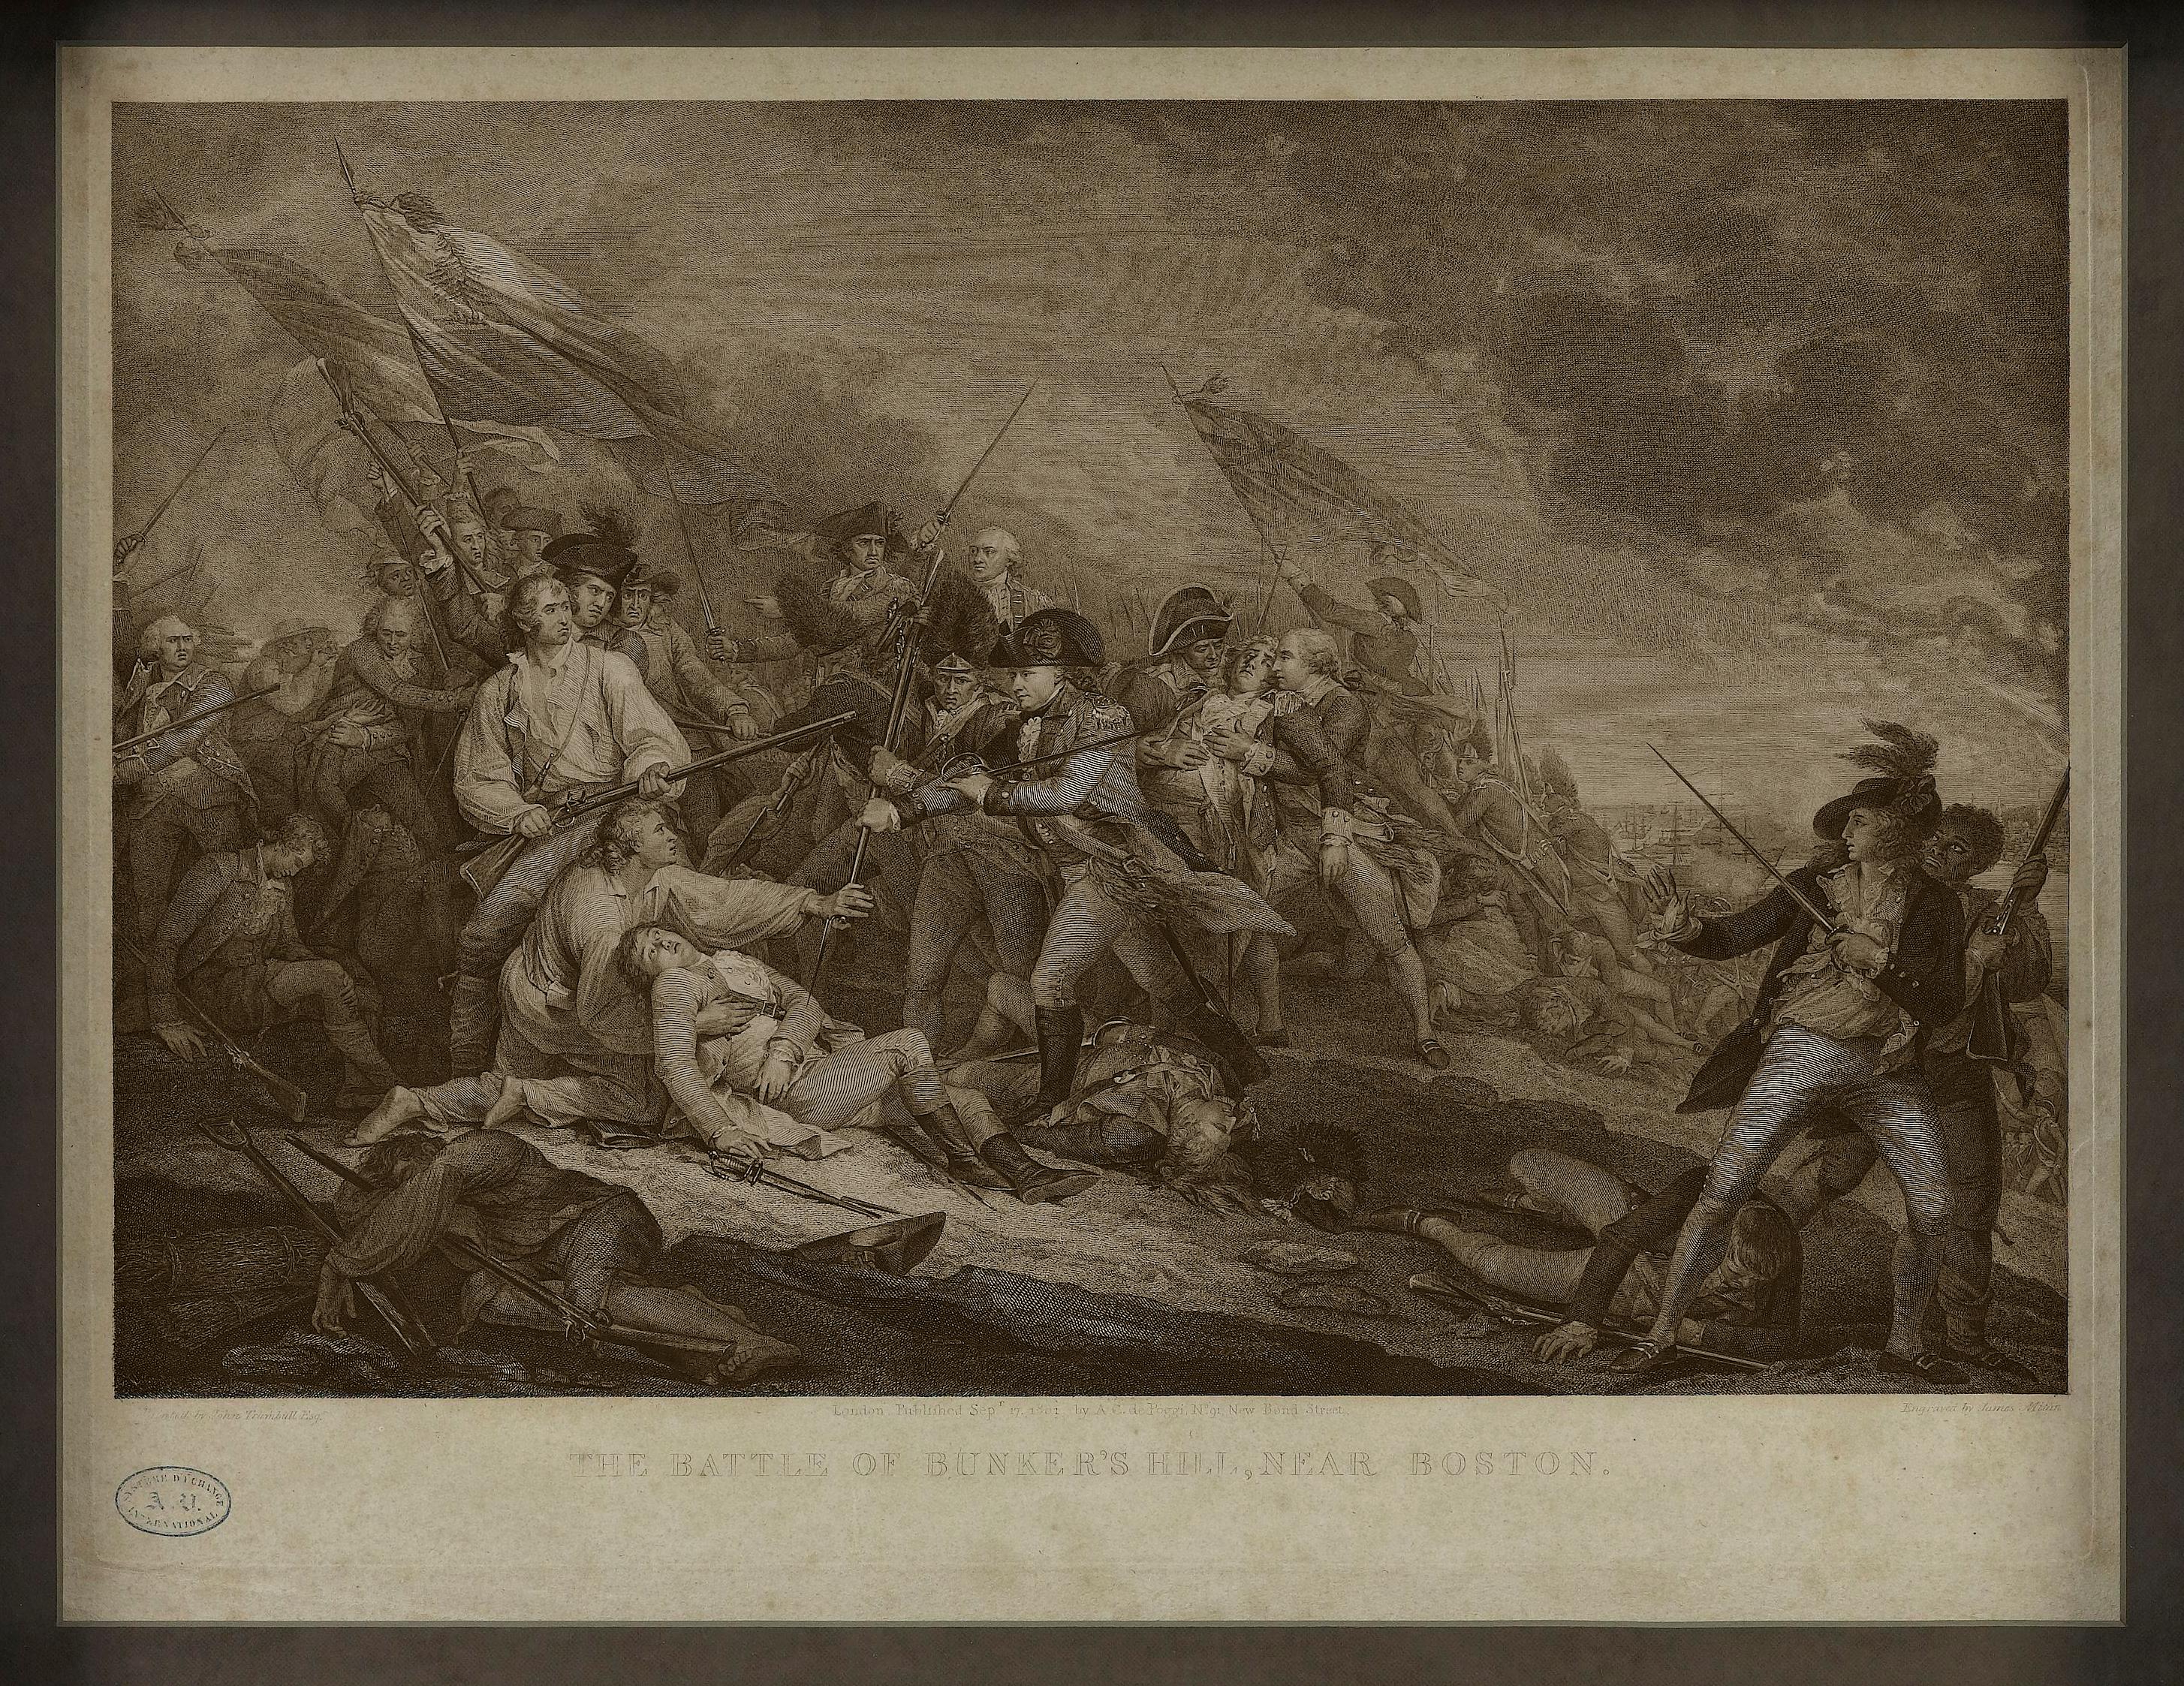 Cette gravure dramatique de la bataille de Bunker Hill pendant la guerre d'Indépendance a été réalisée d'après la célèbre huile sur toile de 1785 de John Trumbull. Retraçant l'intensité de la bataille, la gravure représente le major John Small